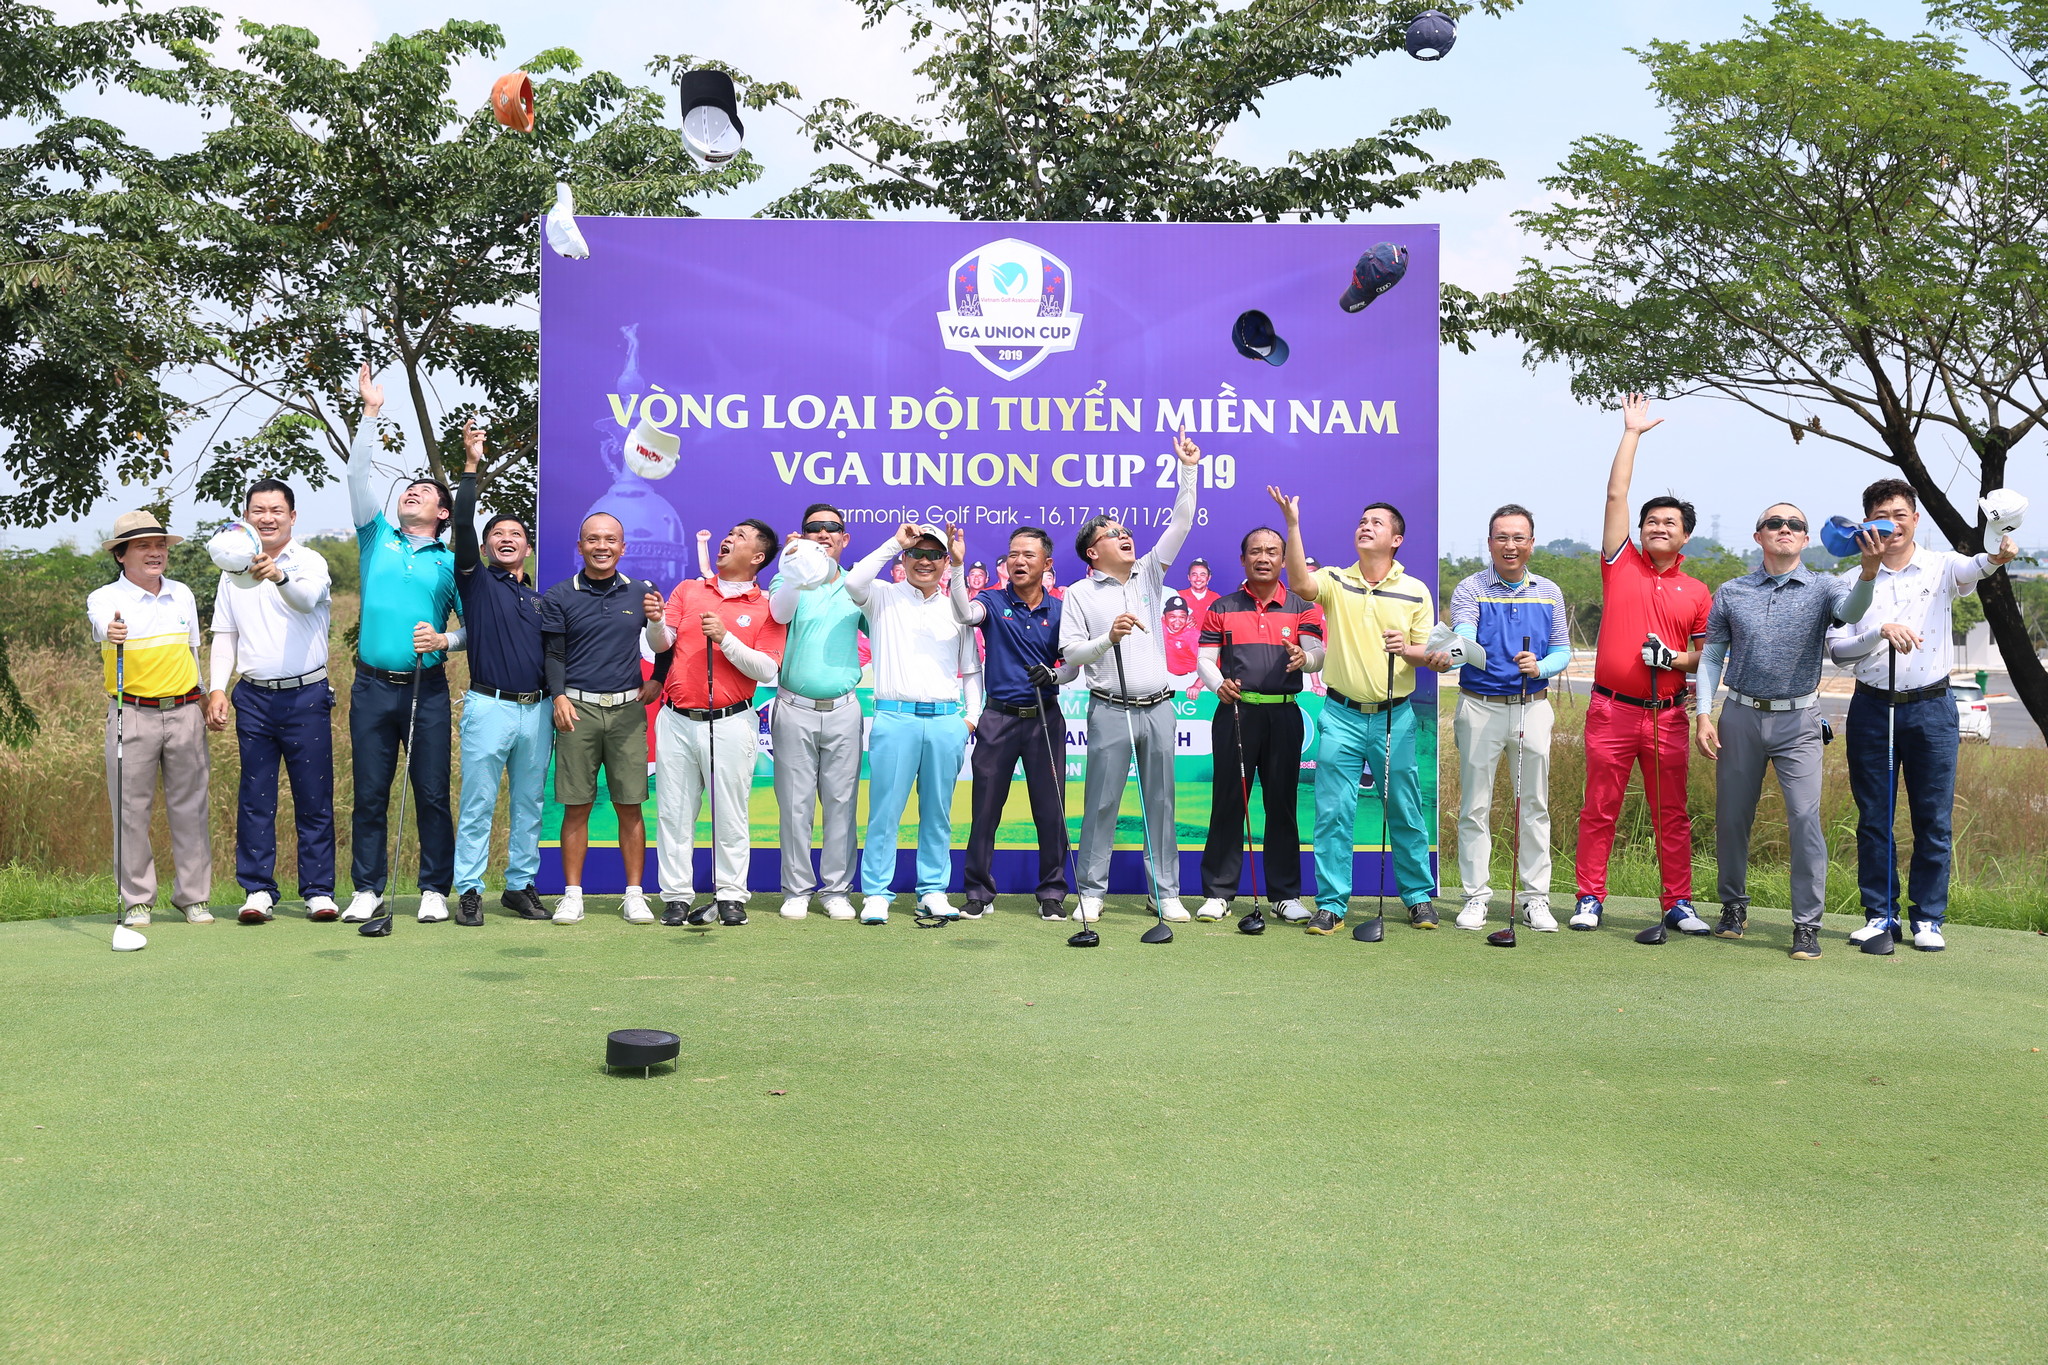 Vòng loại Đội tuyển Miền Nam VGA Union Cup 2019 chính thức khởi động